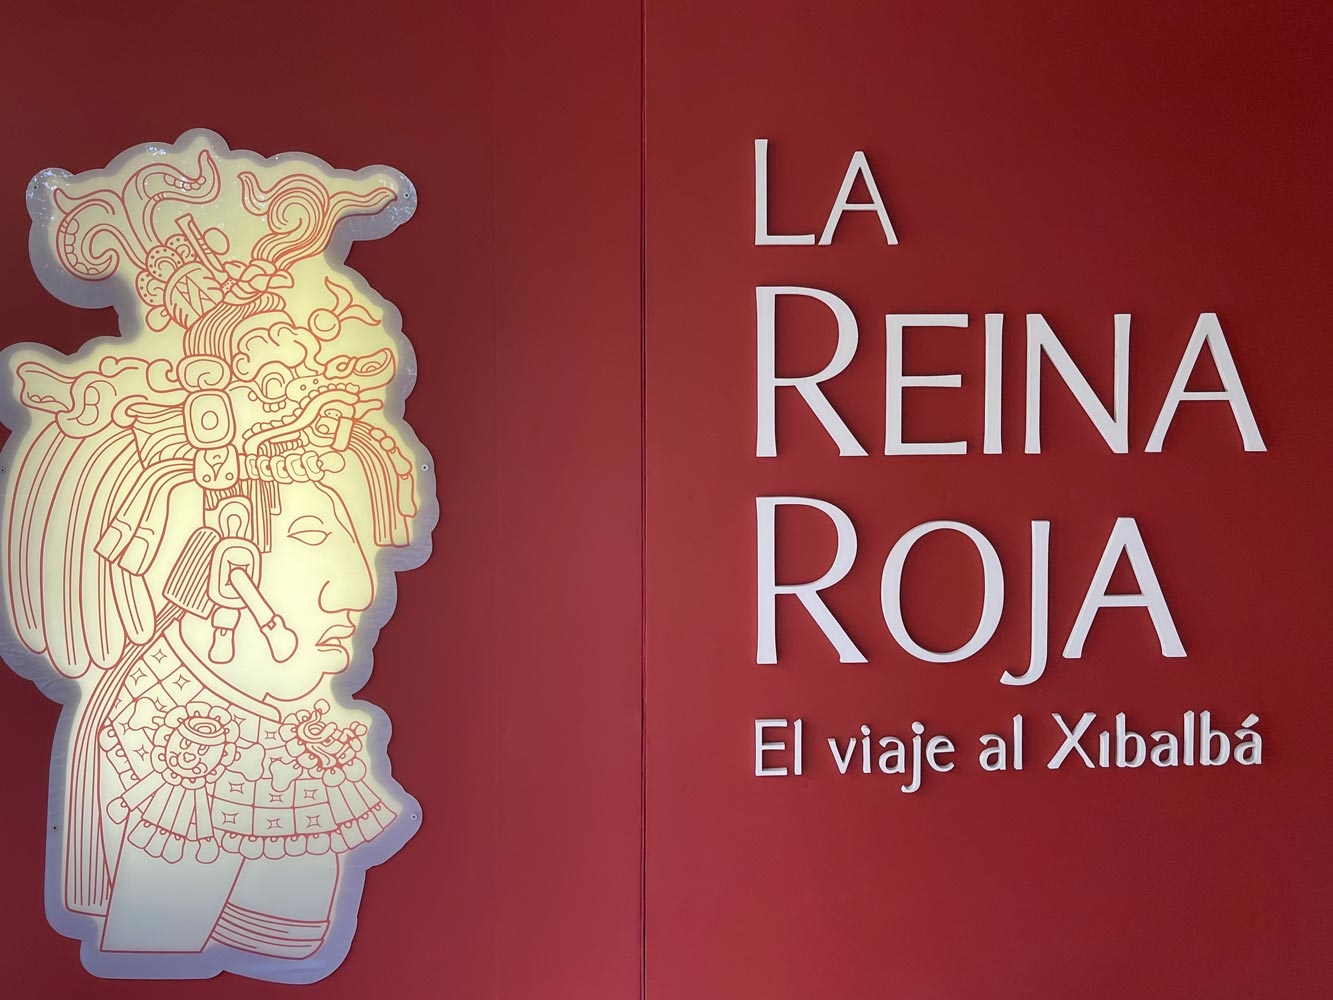 Son piezas que fueron exhibidas de julio a septiembre del 2018 en el Museo del Templo Mayor, en la Ciudad de México y ahora podrán observarse las piezas en Palenque, Chiapas.